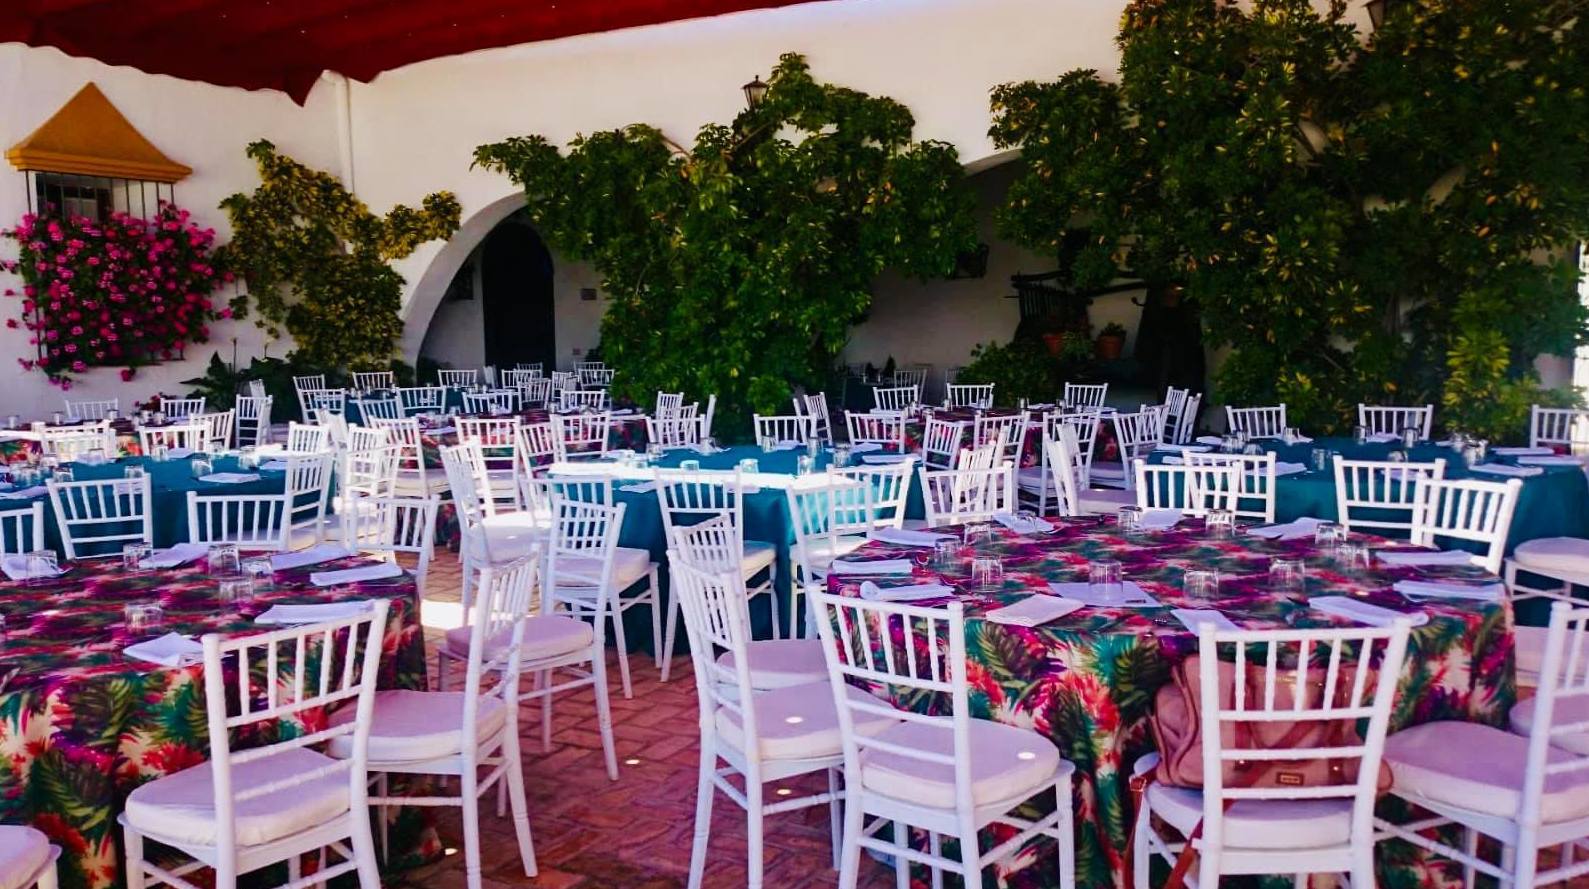 Foto 31 de Celebración de bodas en Alcalá de Guadaíra | Hacienda Mendieta